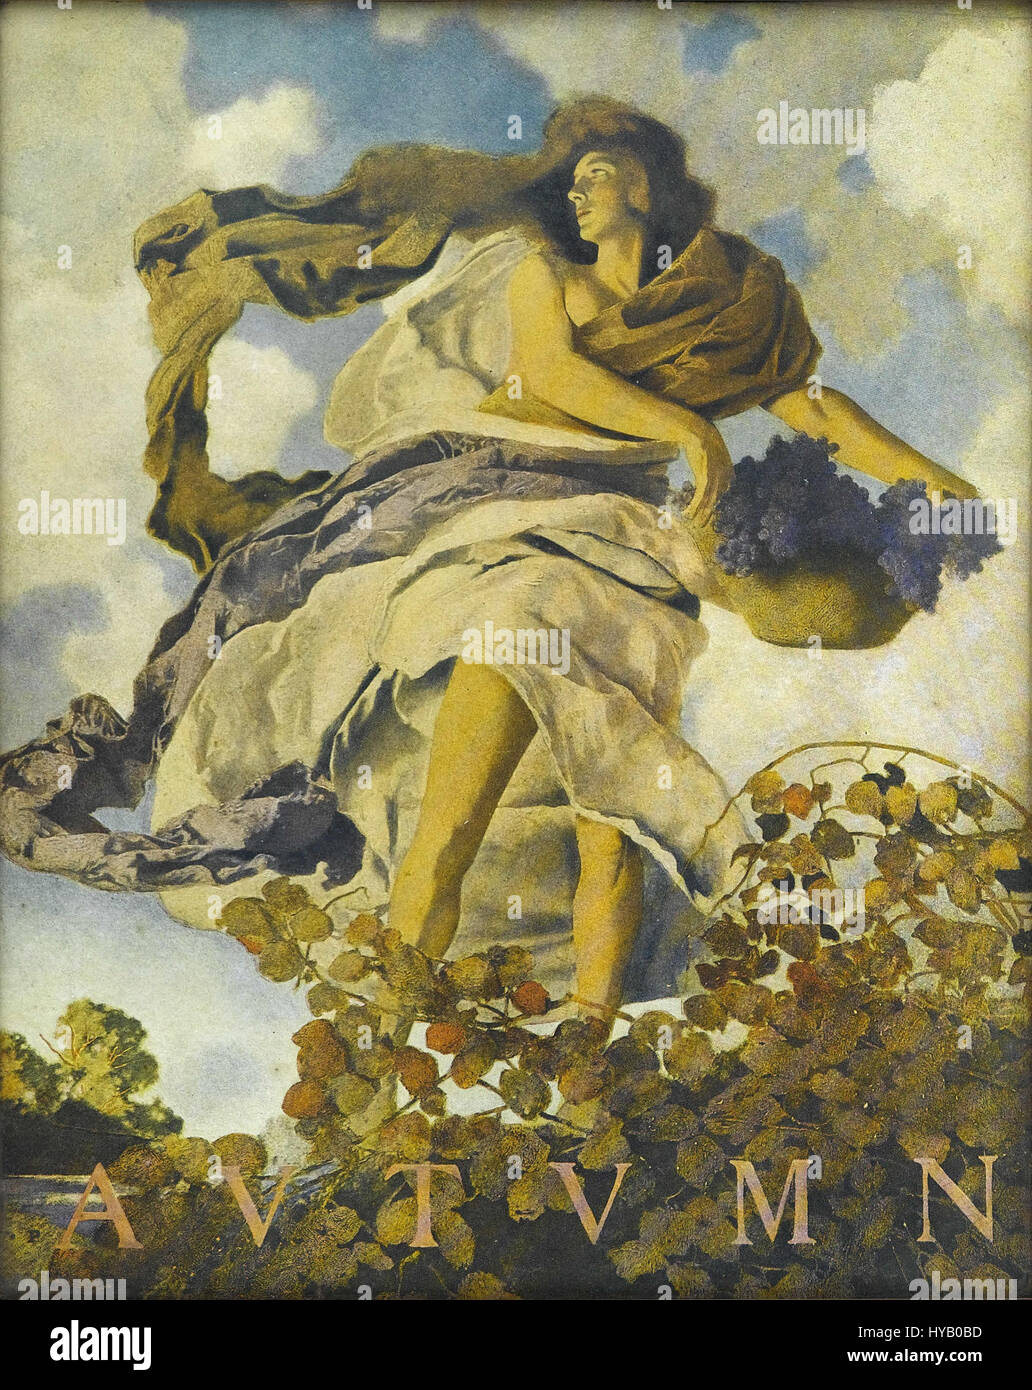 Maxfield Parrish   Autumn (1905) Stock Photo